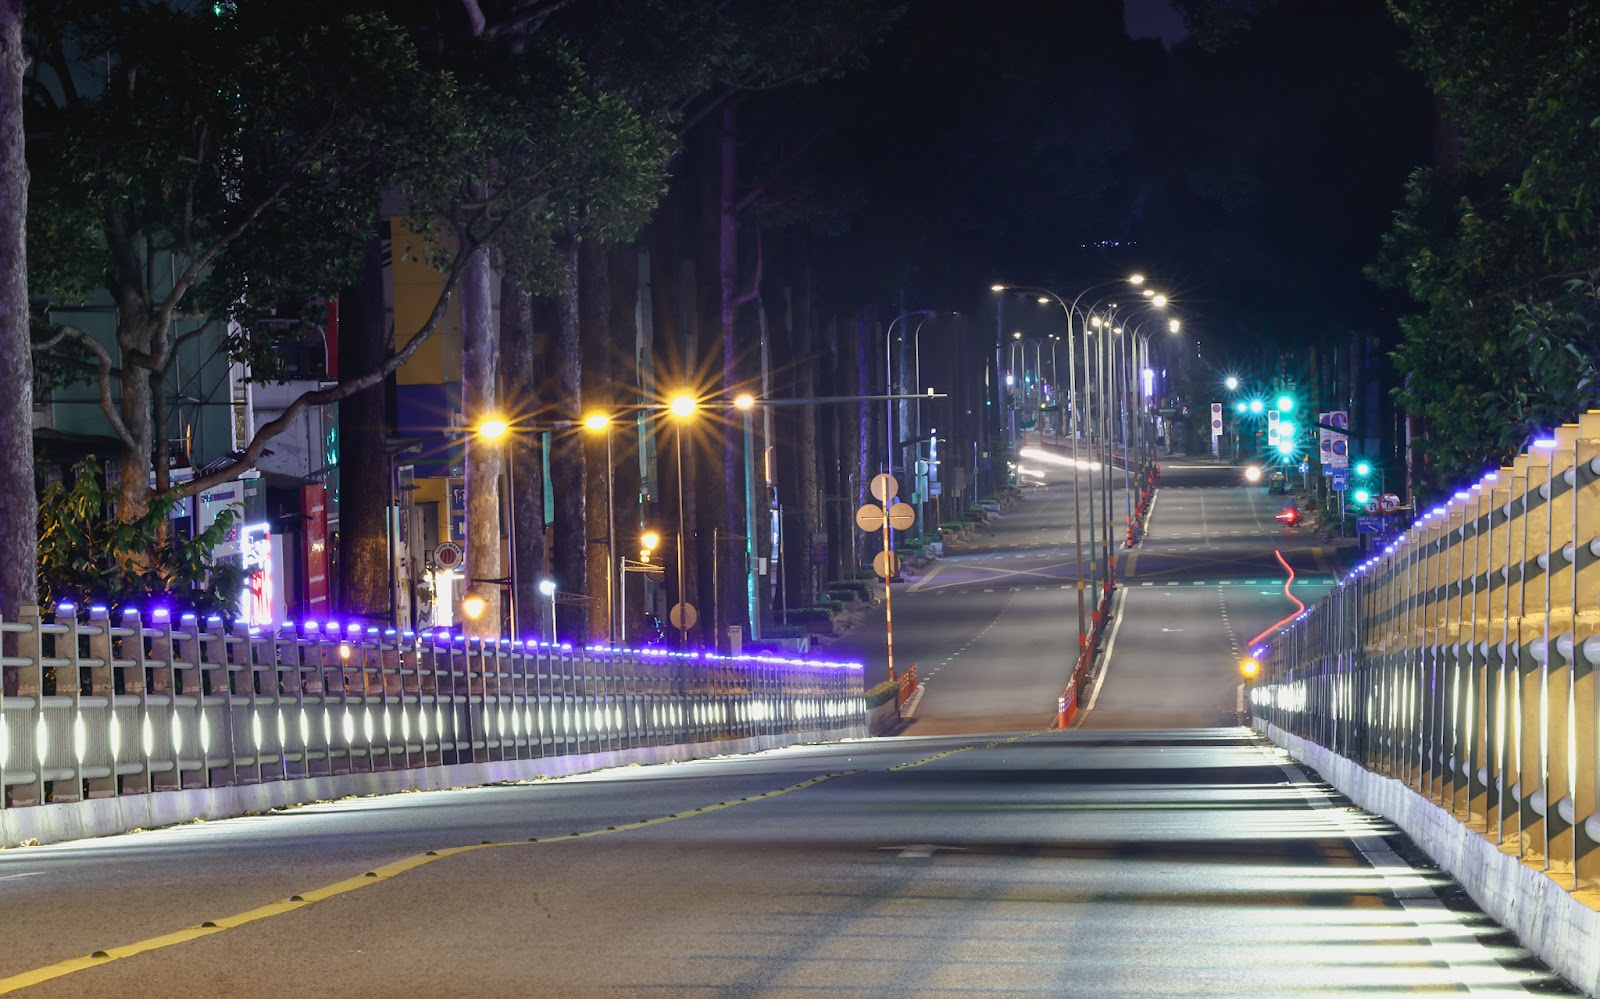 “Bổ túc” đường phố Sài Gòn lúc lên đèn dành cho người ở nhà lâu quá - 12